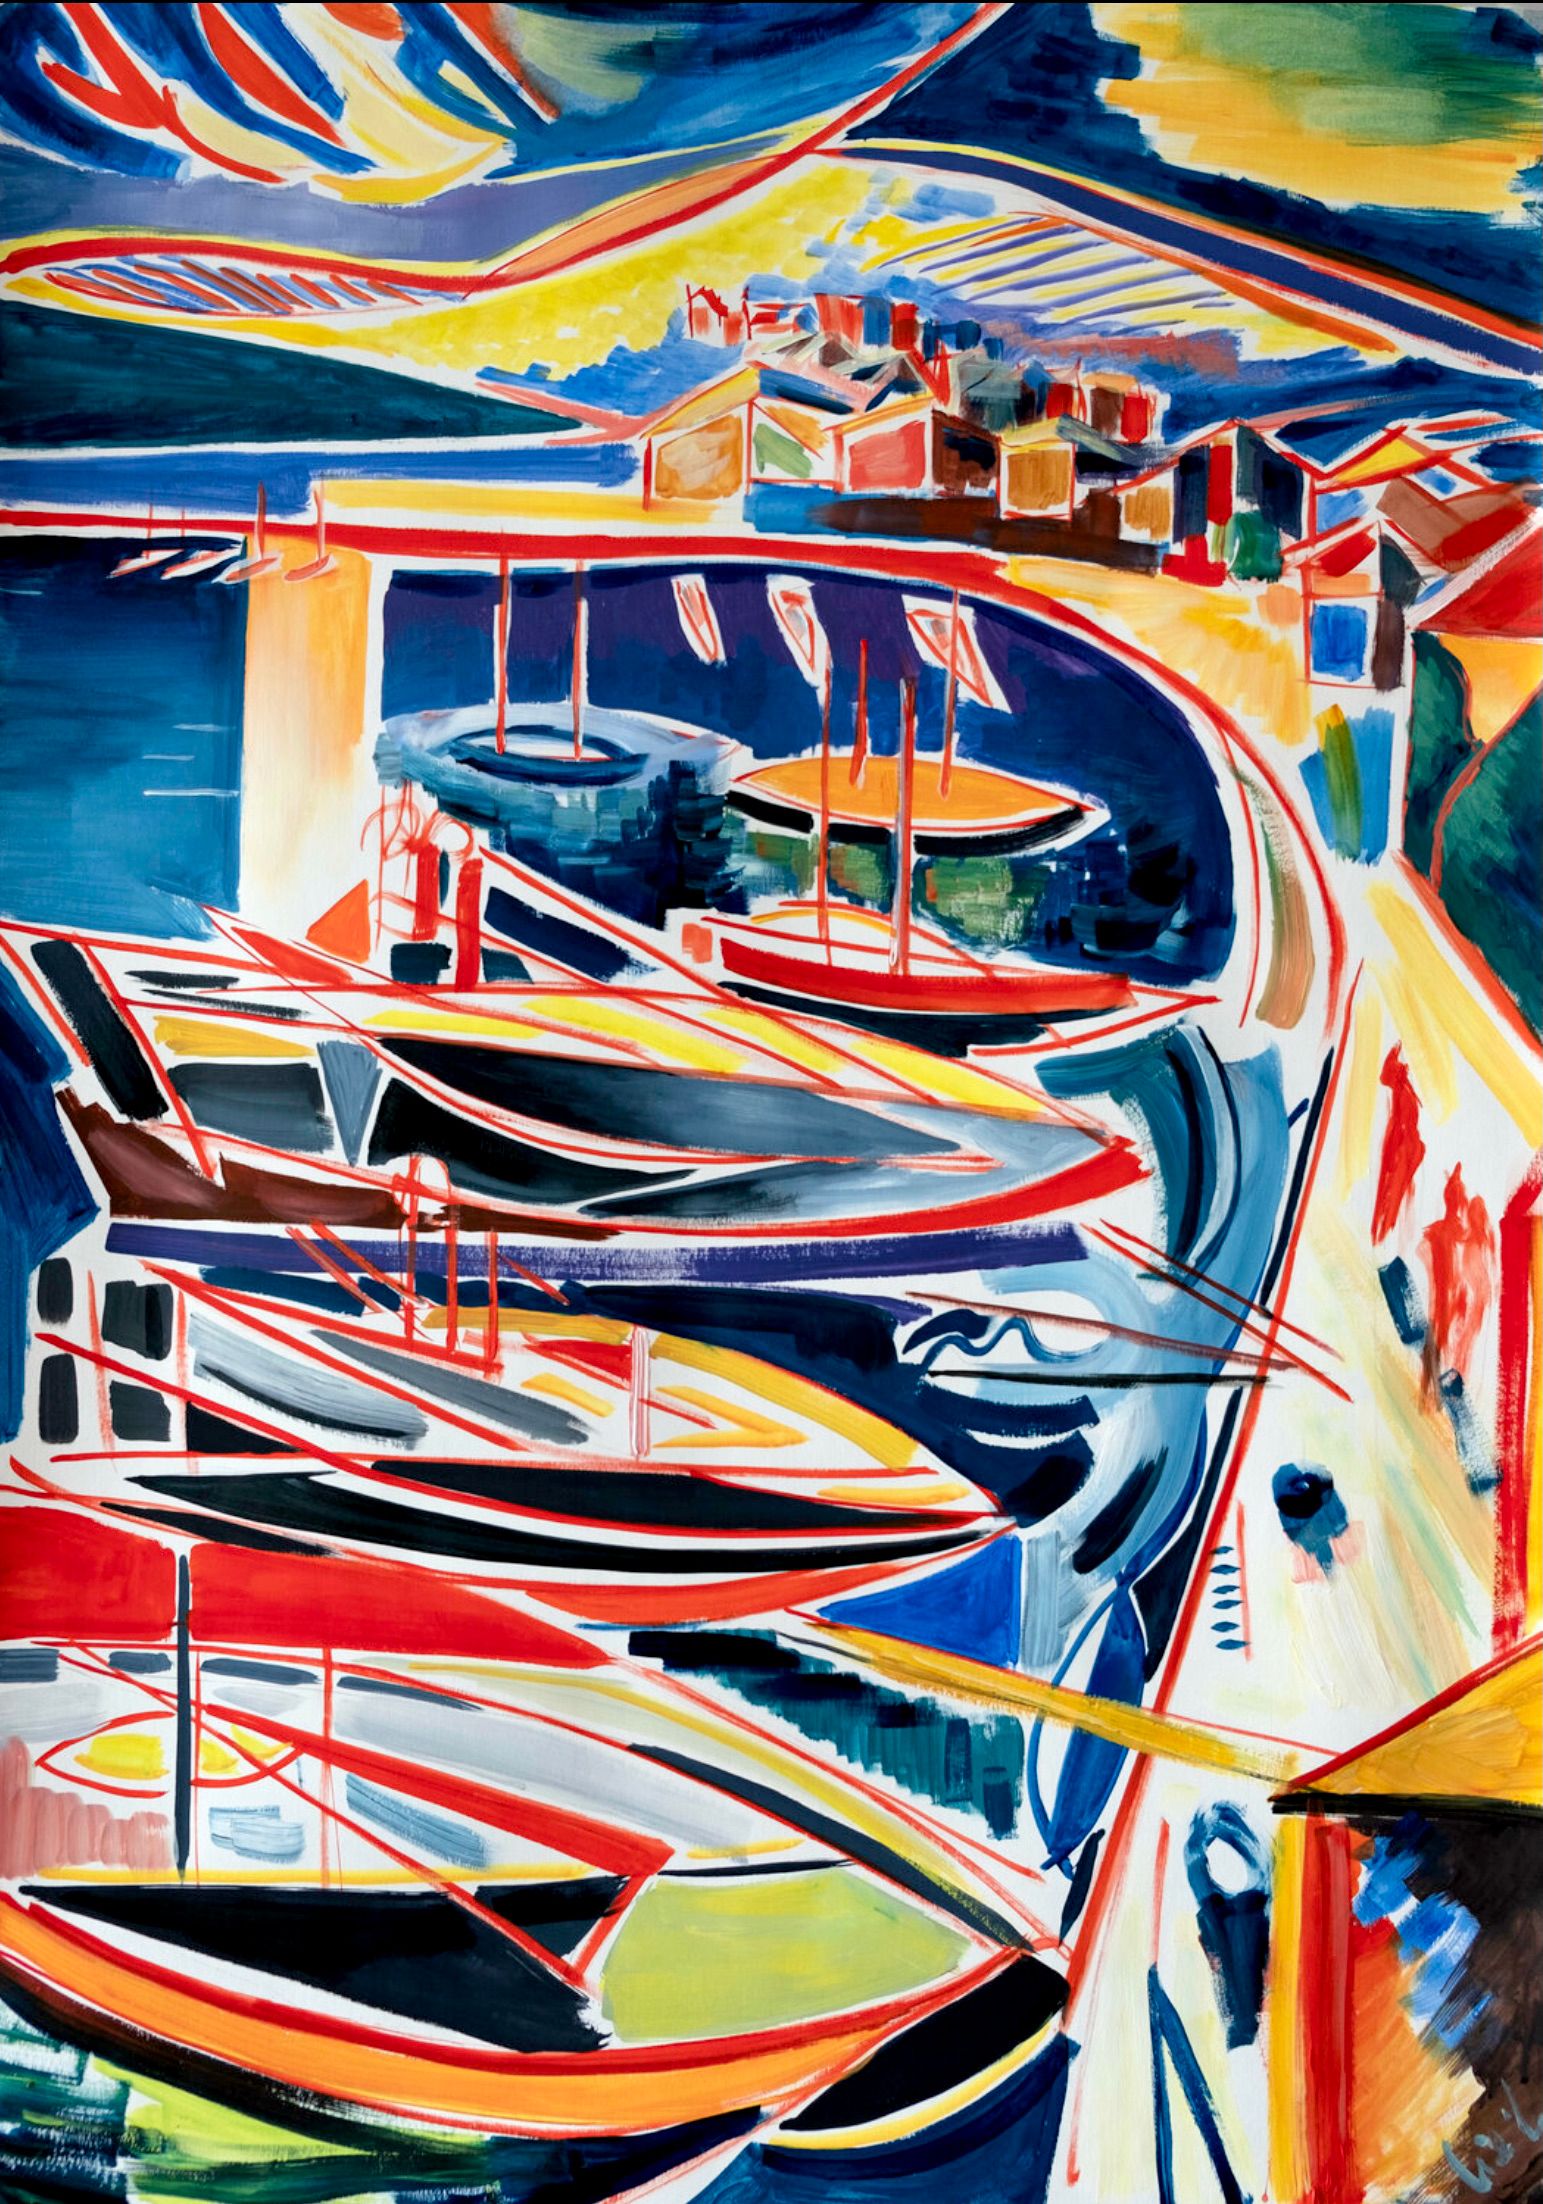 MECESLA Maciej Cieśla, "Portofino Italia en formas abstractas", Pintura abstracta colorista de puerto italiano con barcos